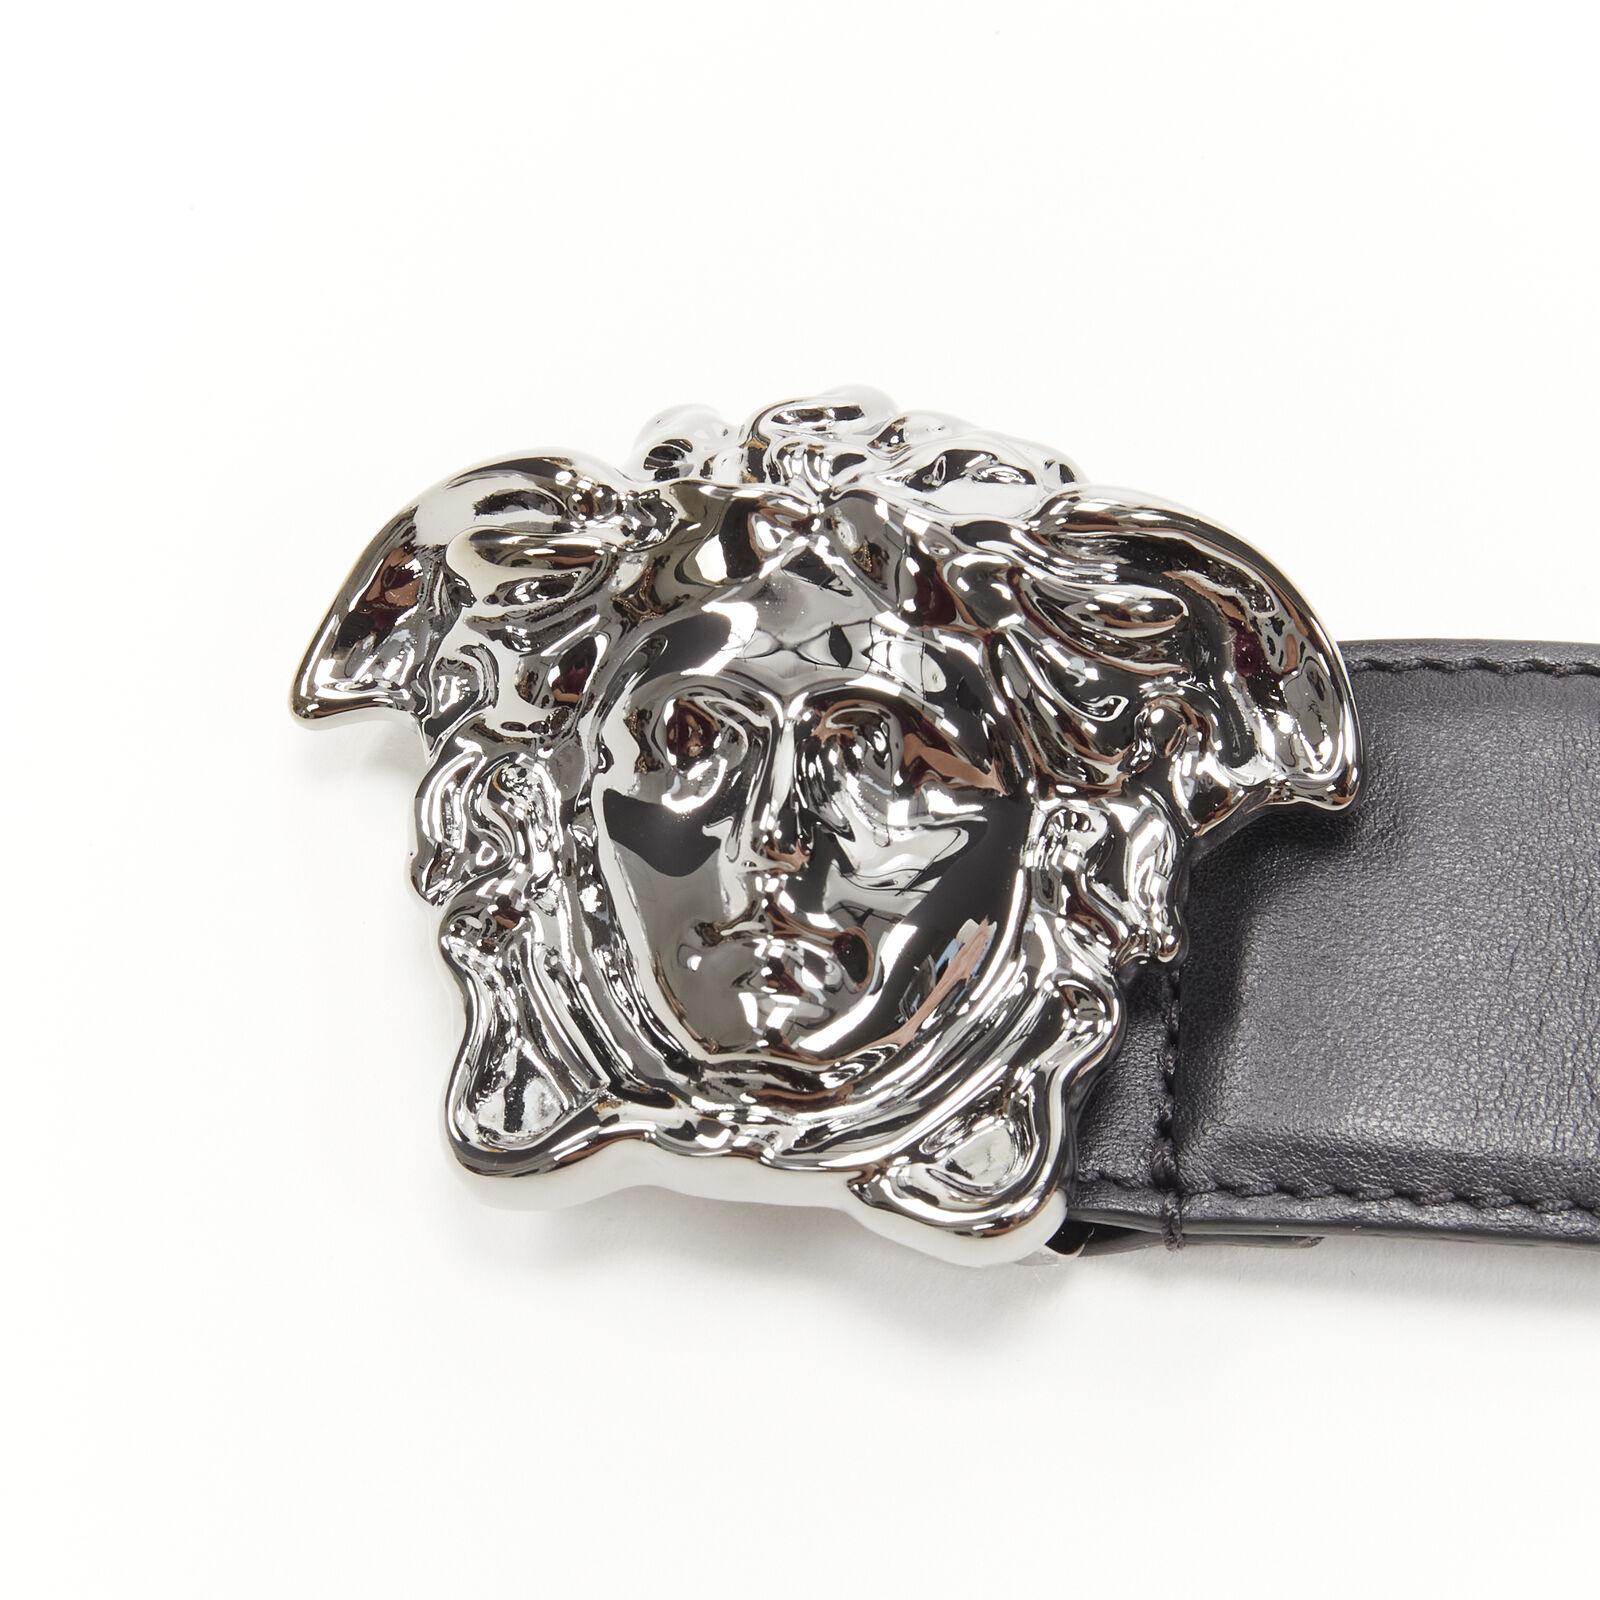 VERSACE La Medusa ruthenium silver buckle black leather belt 115cm 44-48